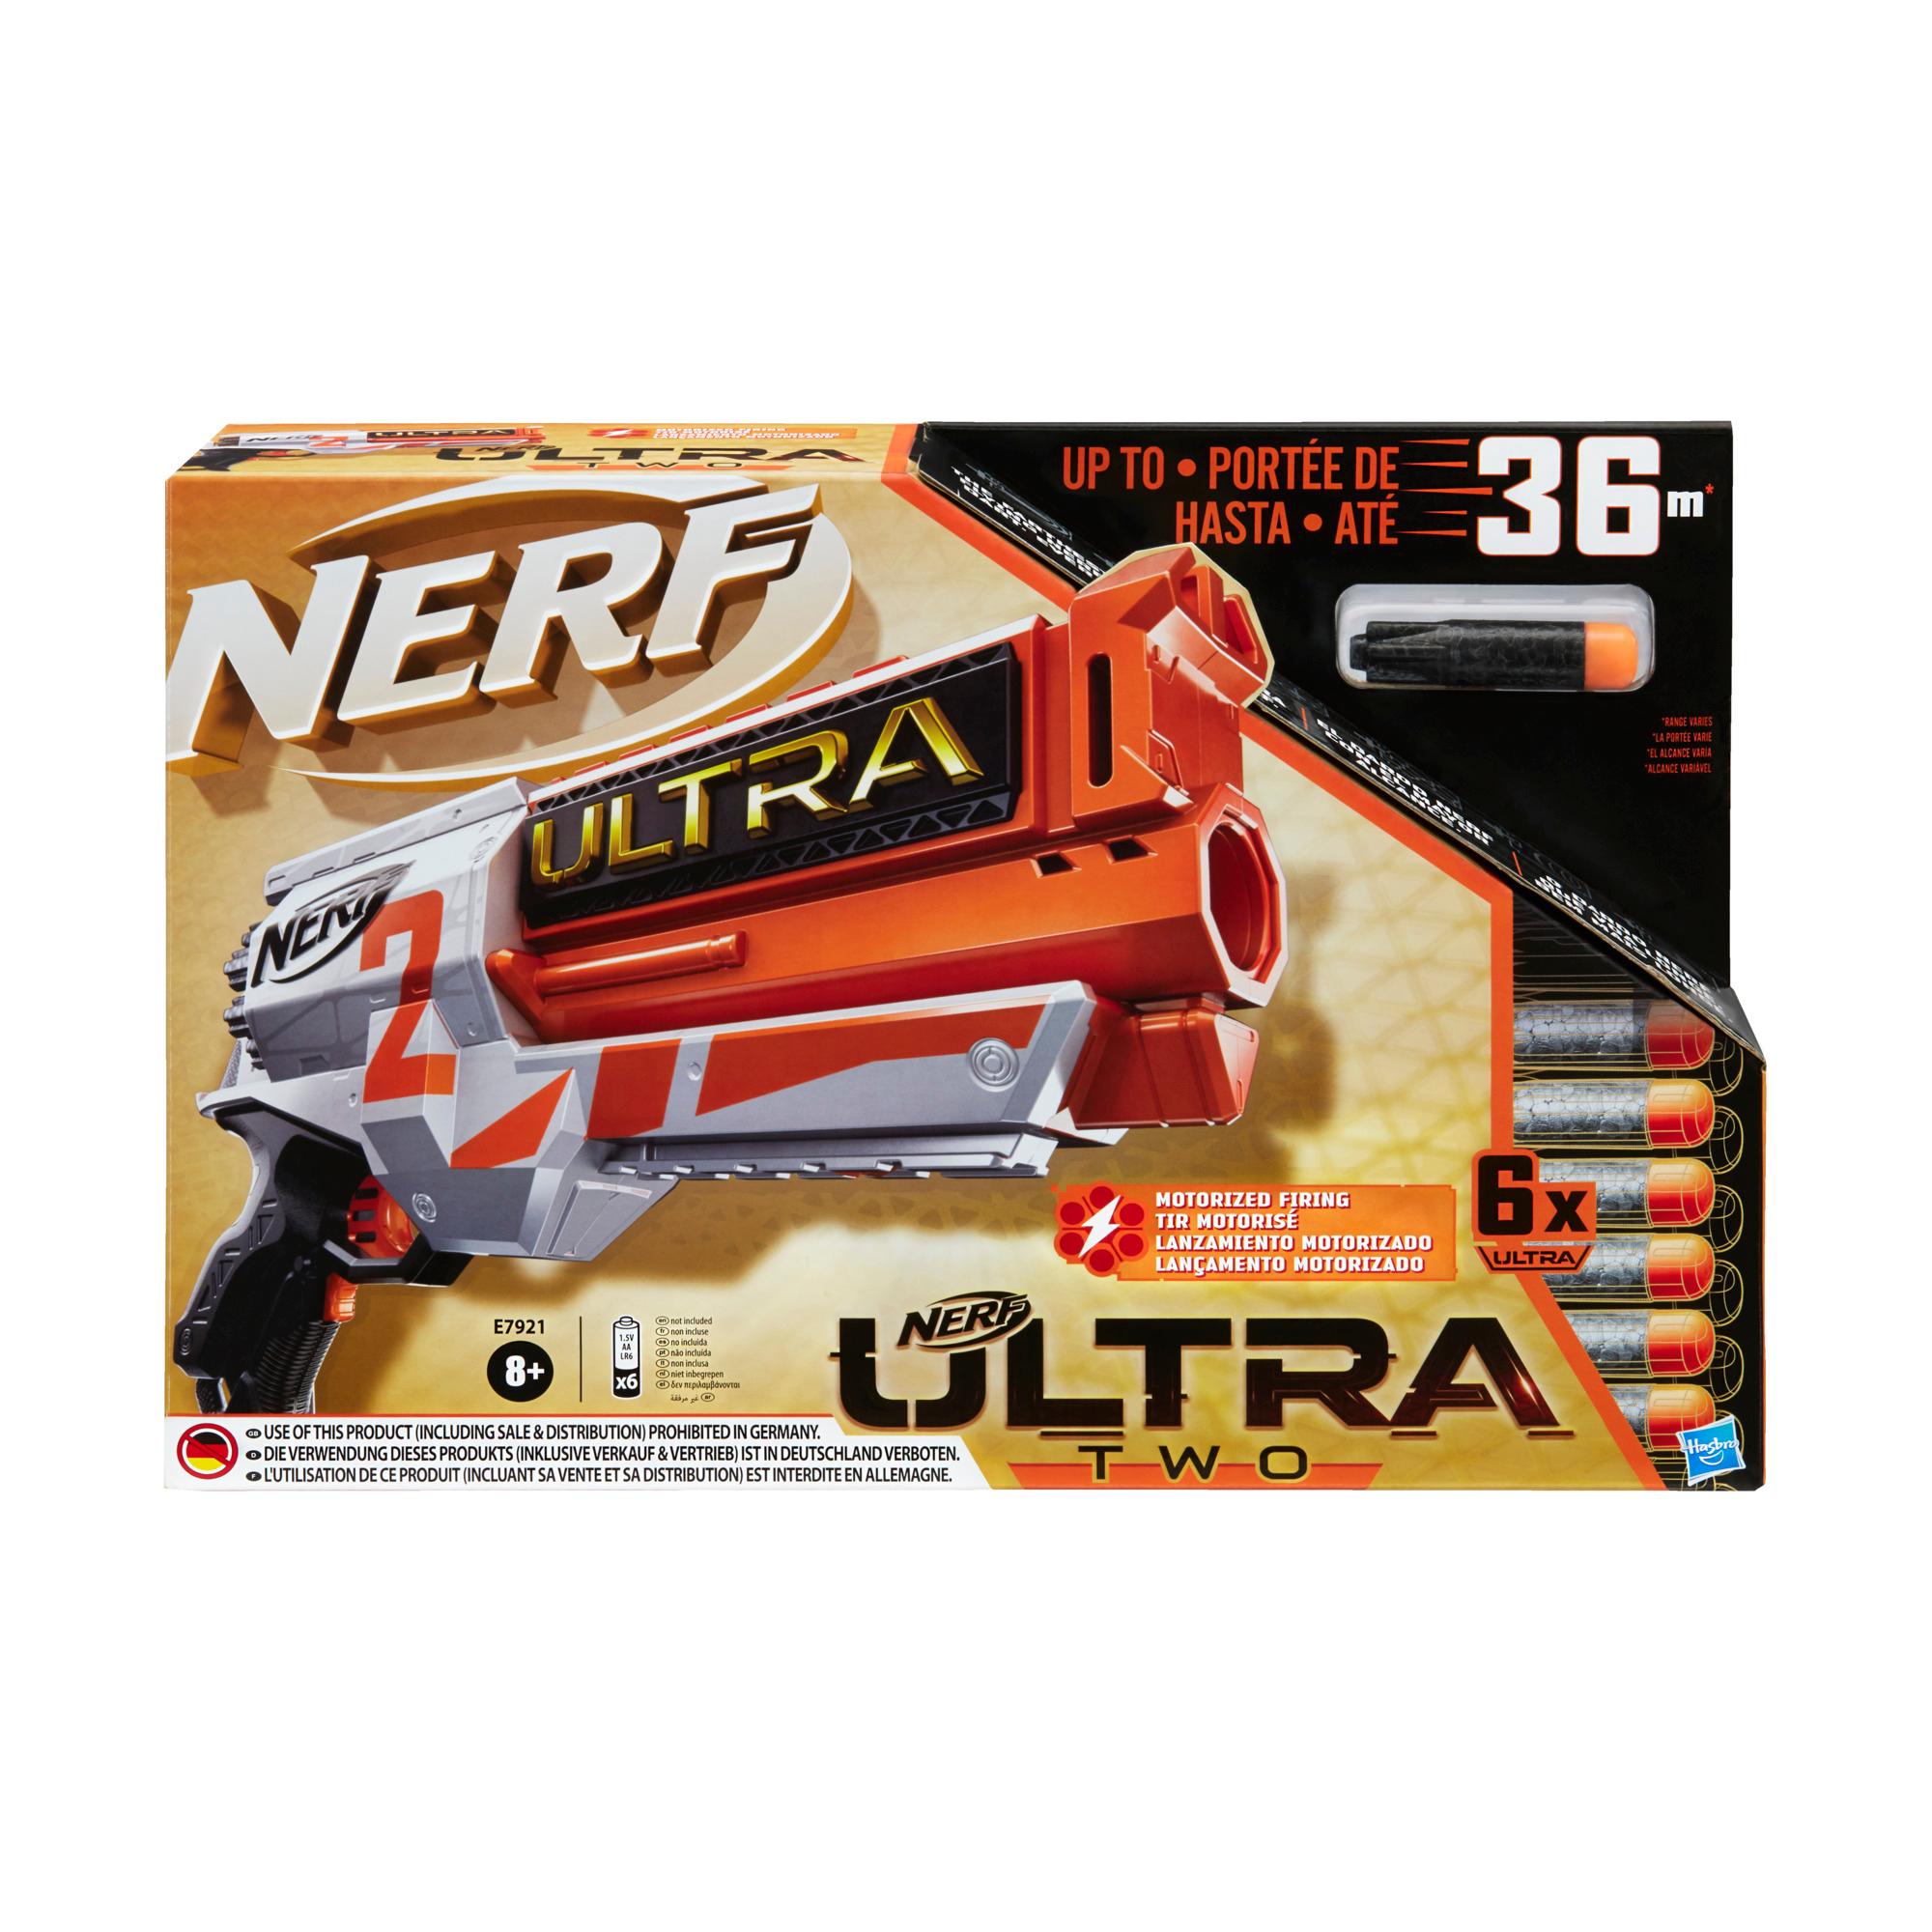 Moottoroitu Nerf Ultra Two -blasteri – Nopea lataus takaa, mukana 6 Nerf Ultra -nuolta – Yhteensopiva vain Nerf Ultra One -nuolten kanssa